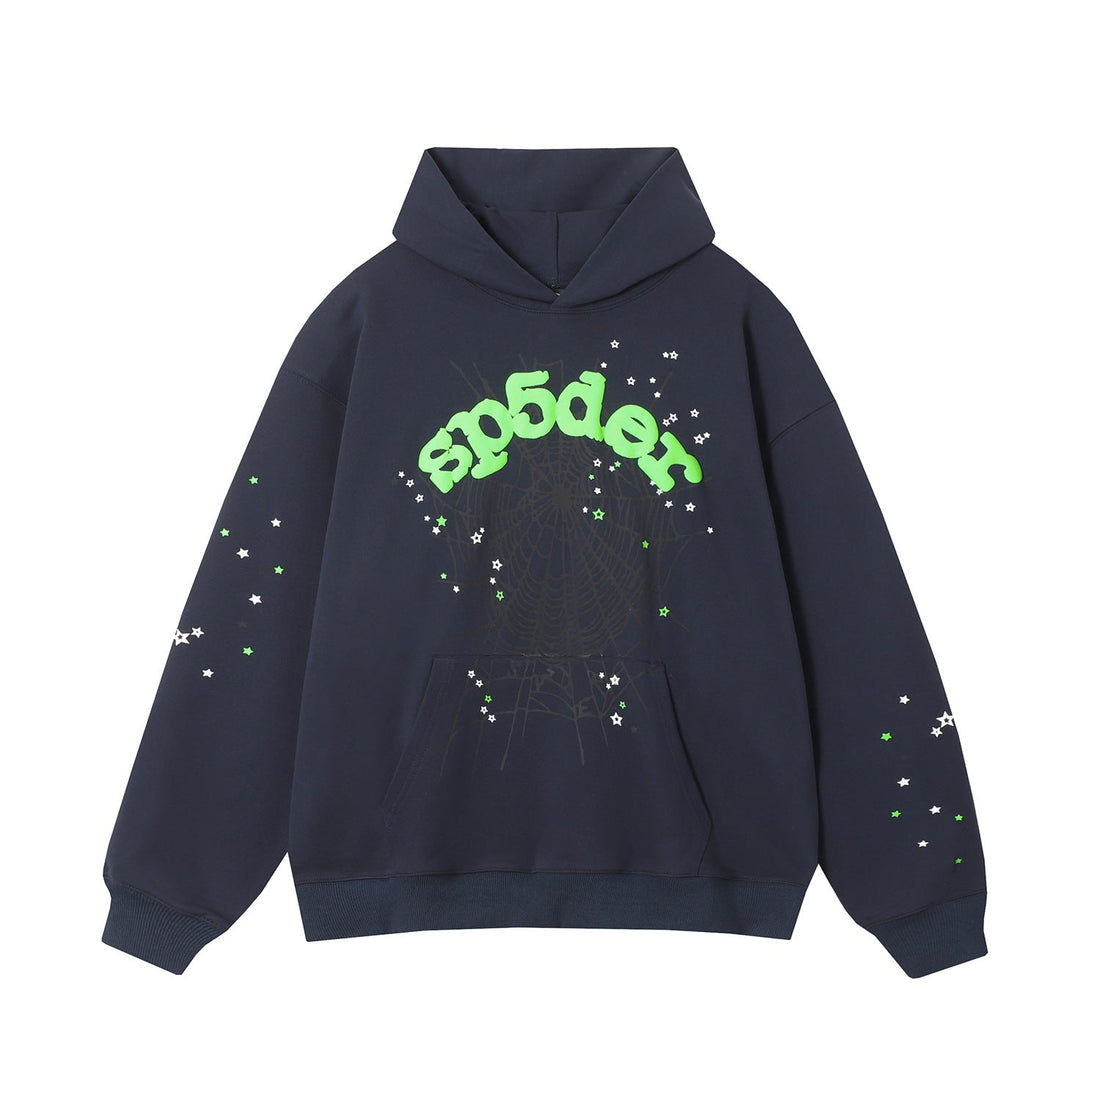 Cool Navy Sp5der Hoodie - Trendy Web and Star Print Hooded Sweatshirt - Seakoff